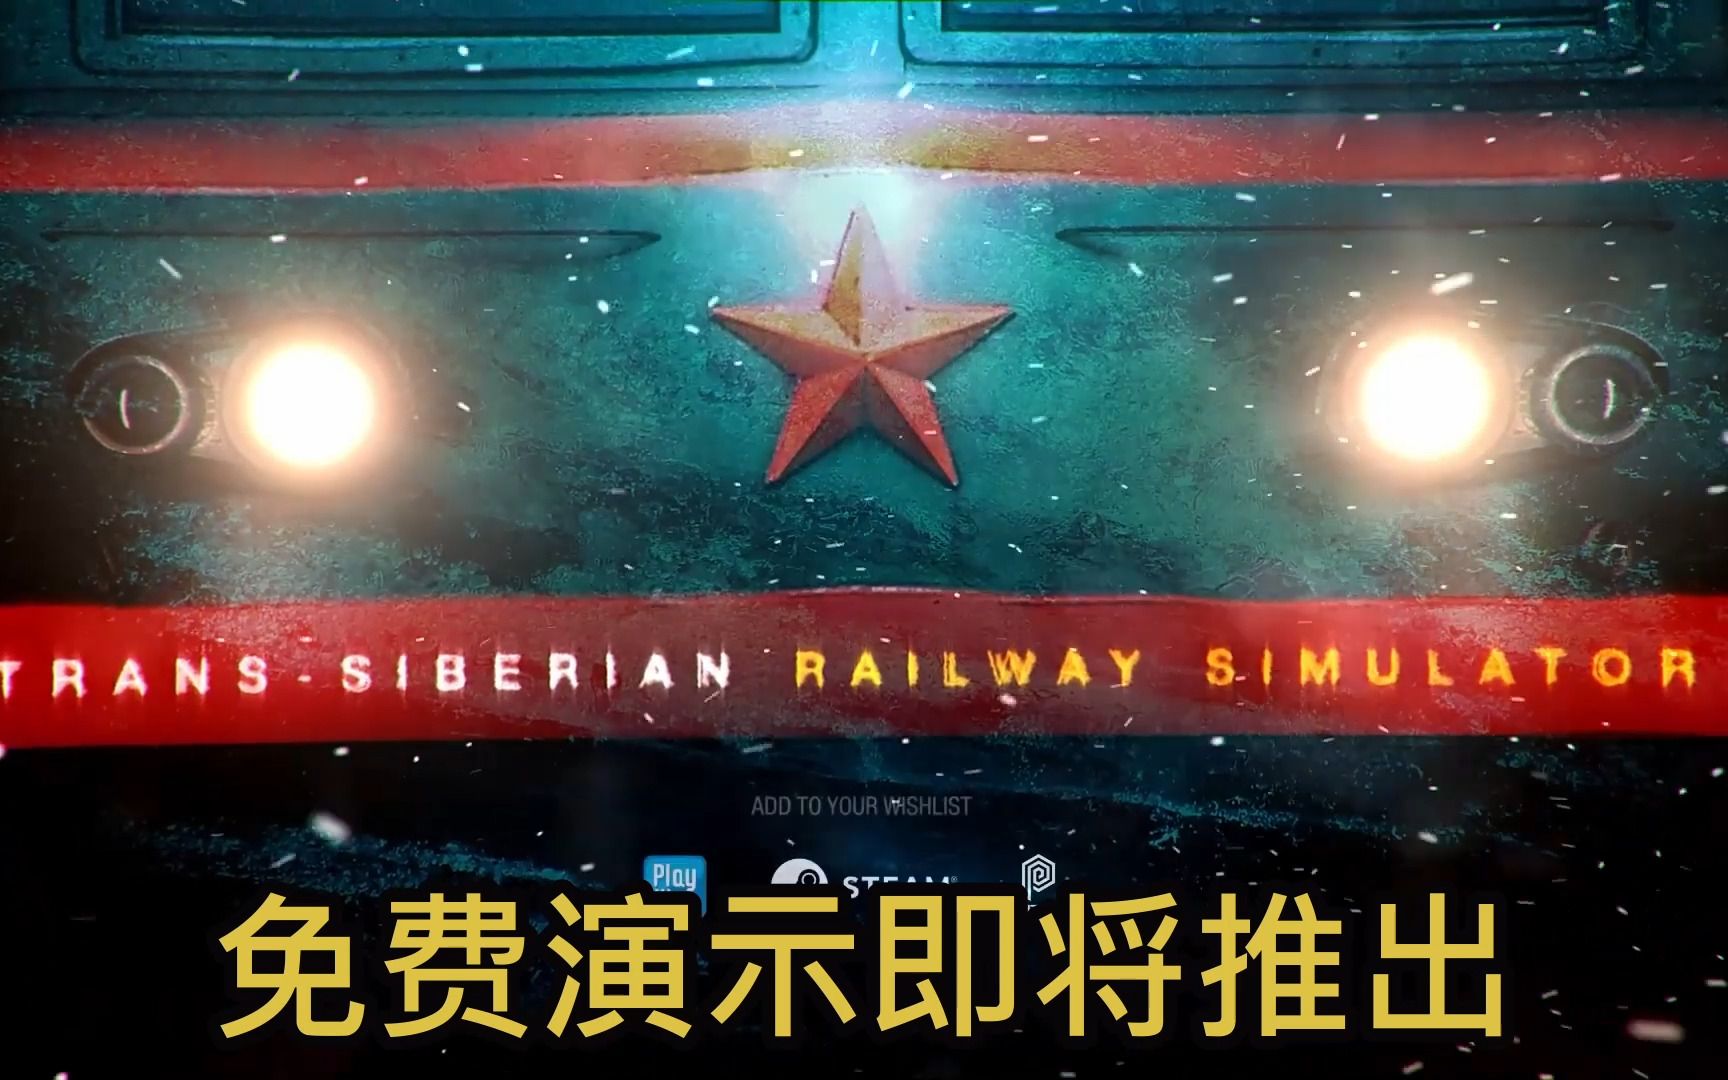 生存铁路列车模拟 - 免费演示版本即将发布 - Trans-Siberian Railway Simulator: Prologue